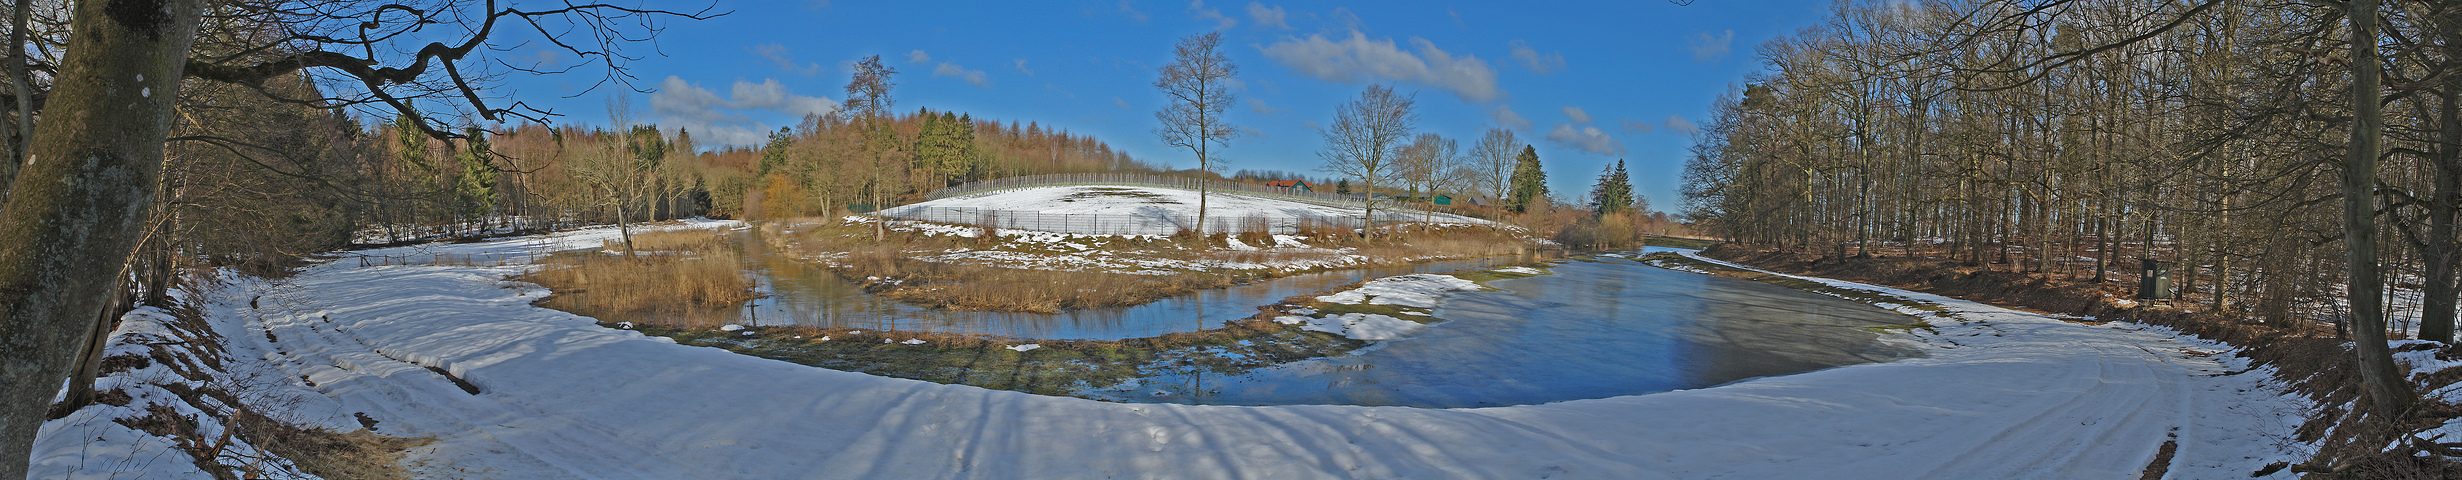 Winterhochwasser am Oberlauf der Kossau bei Altmühlen